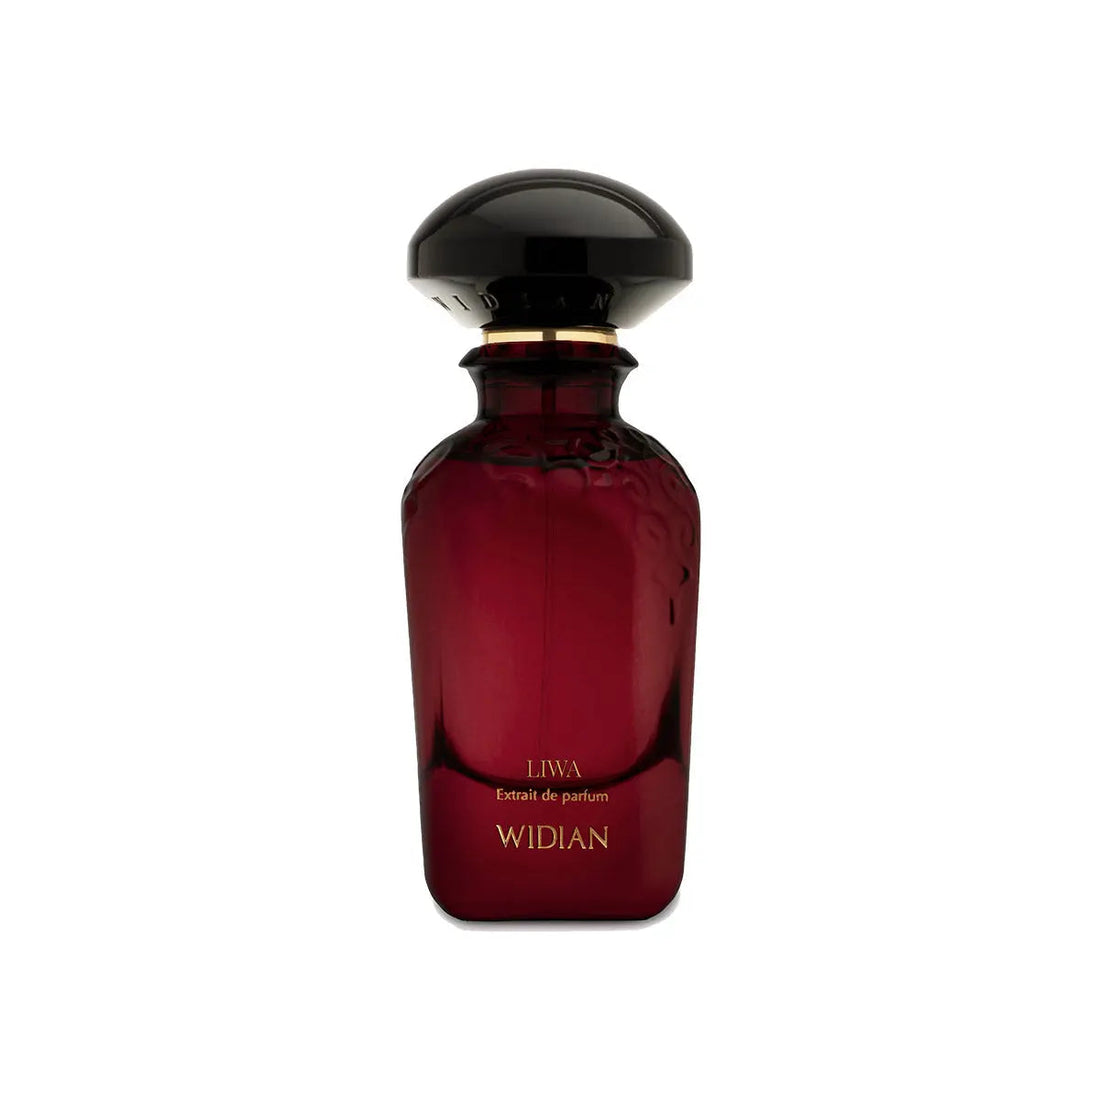 Extracto de perfume Liwa Widian - 50 ml